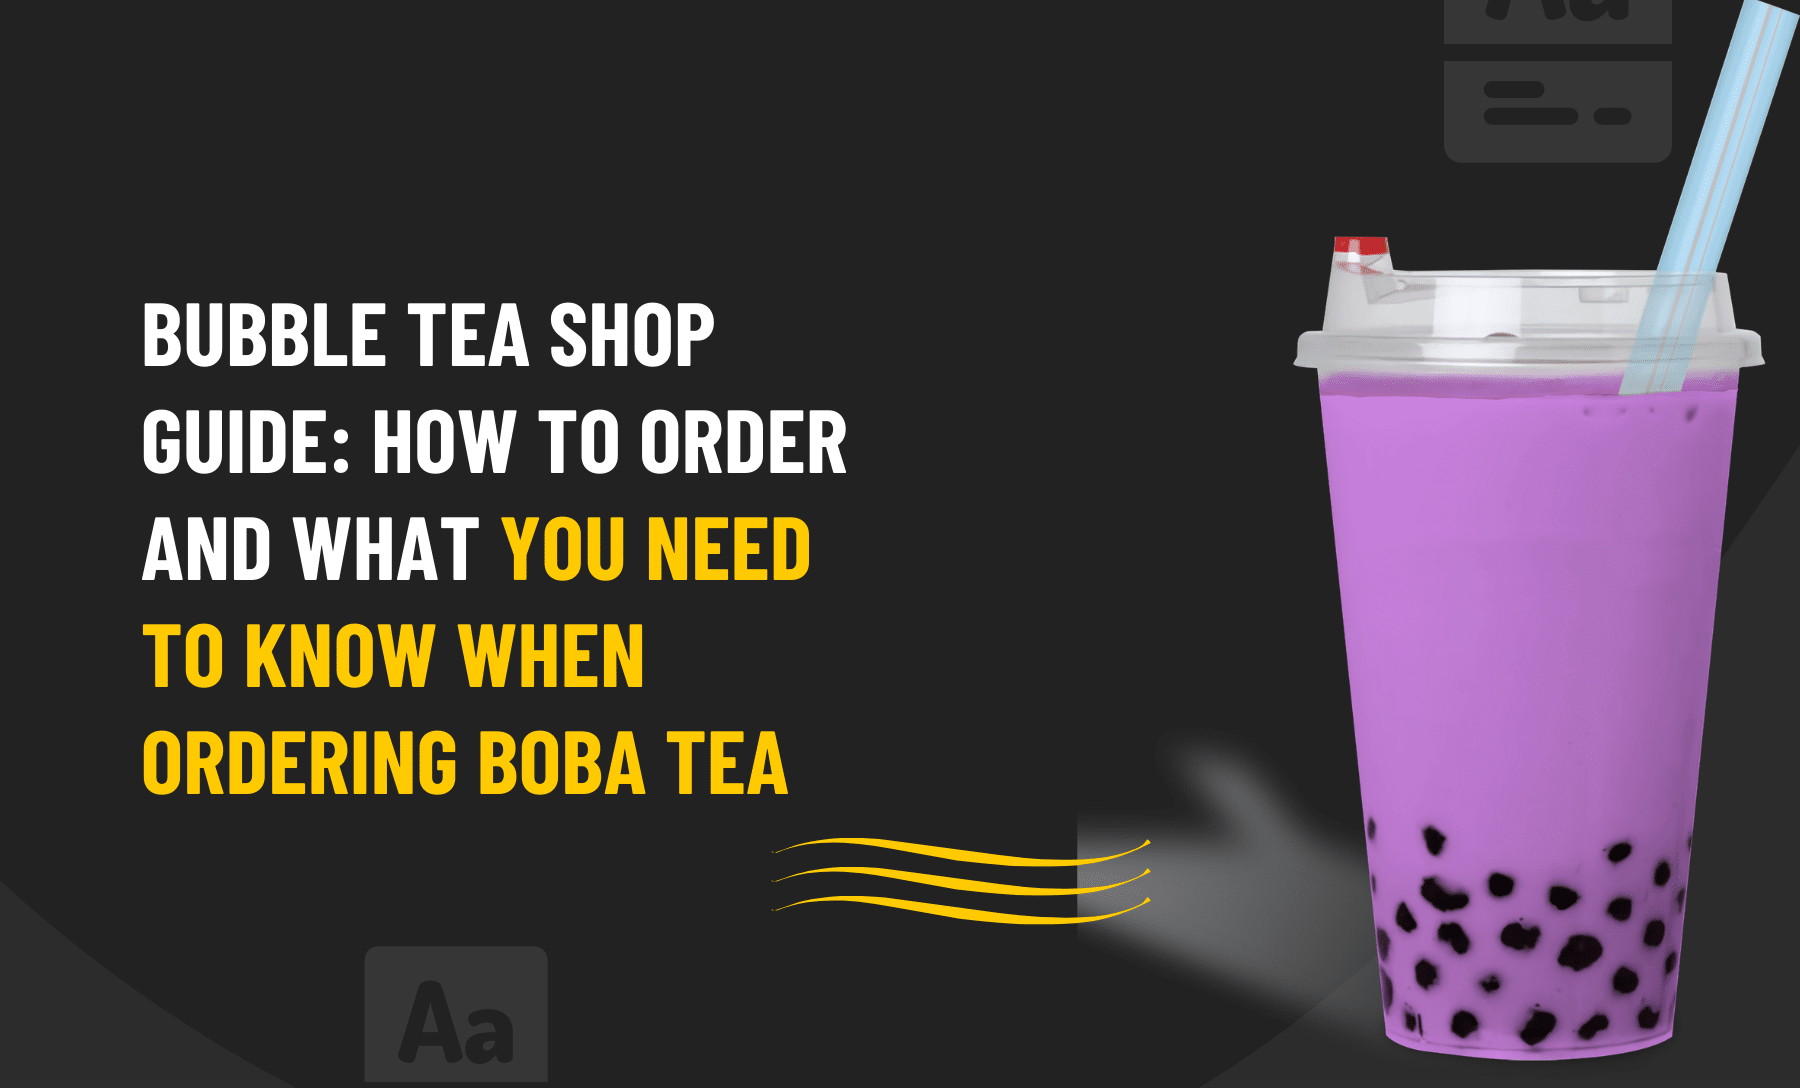 Ordering boba Tea